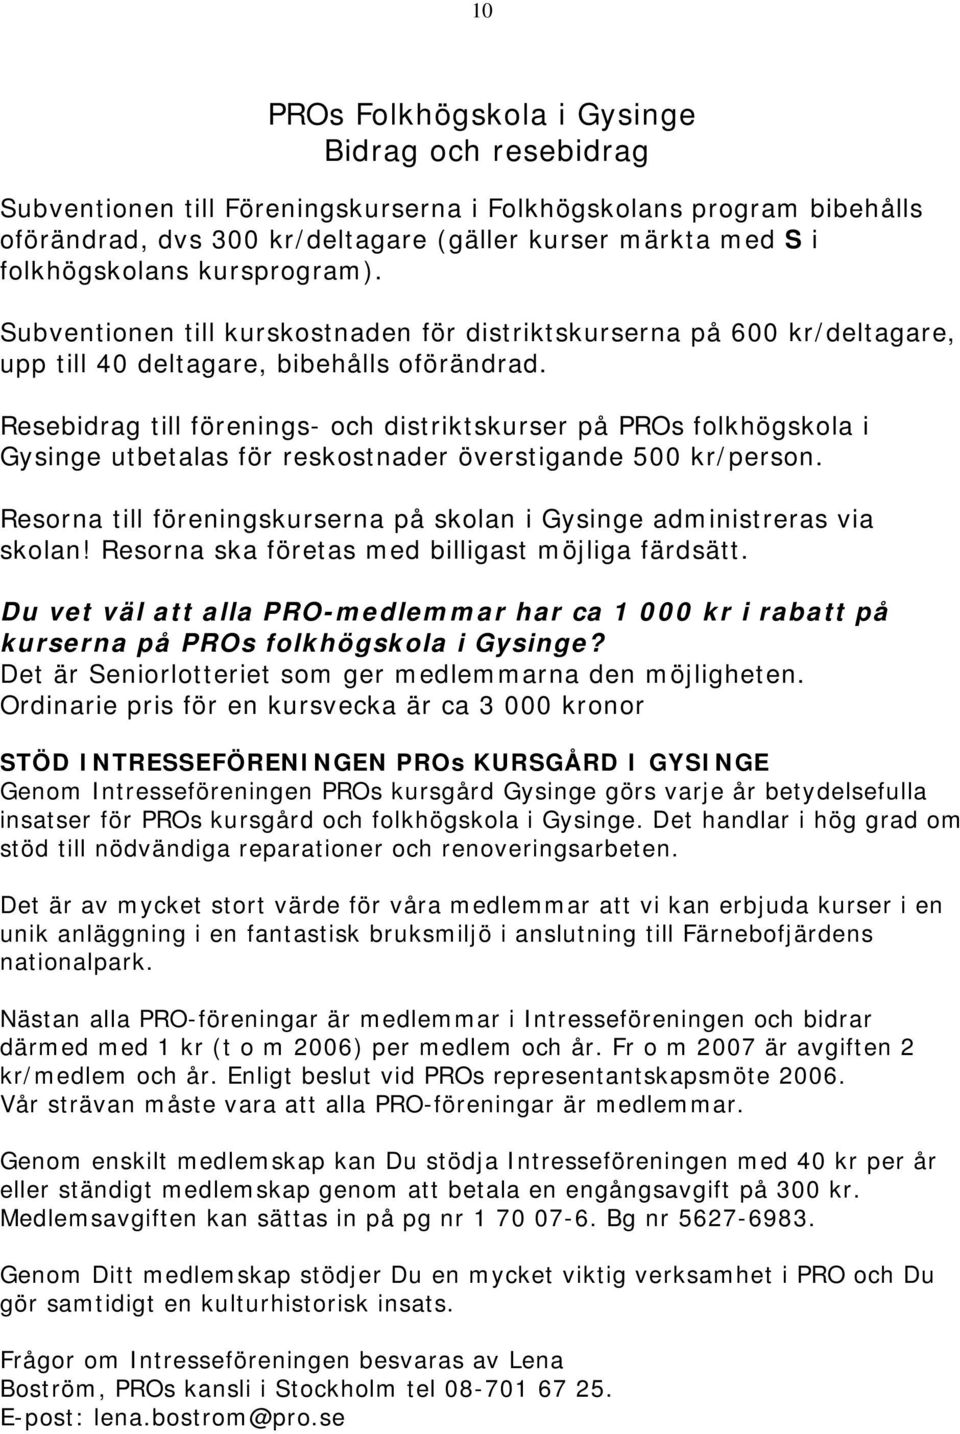 Resebidrag till förenings- och distriktskurser på PROs folkhögskola i Gysinge utbetalas för reskostnader överstigande 500 kr/person.